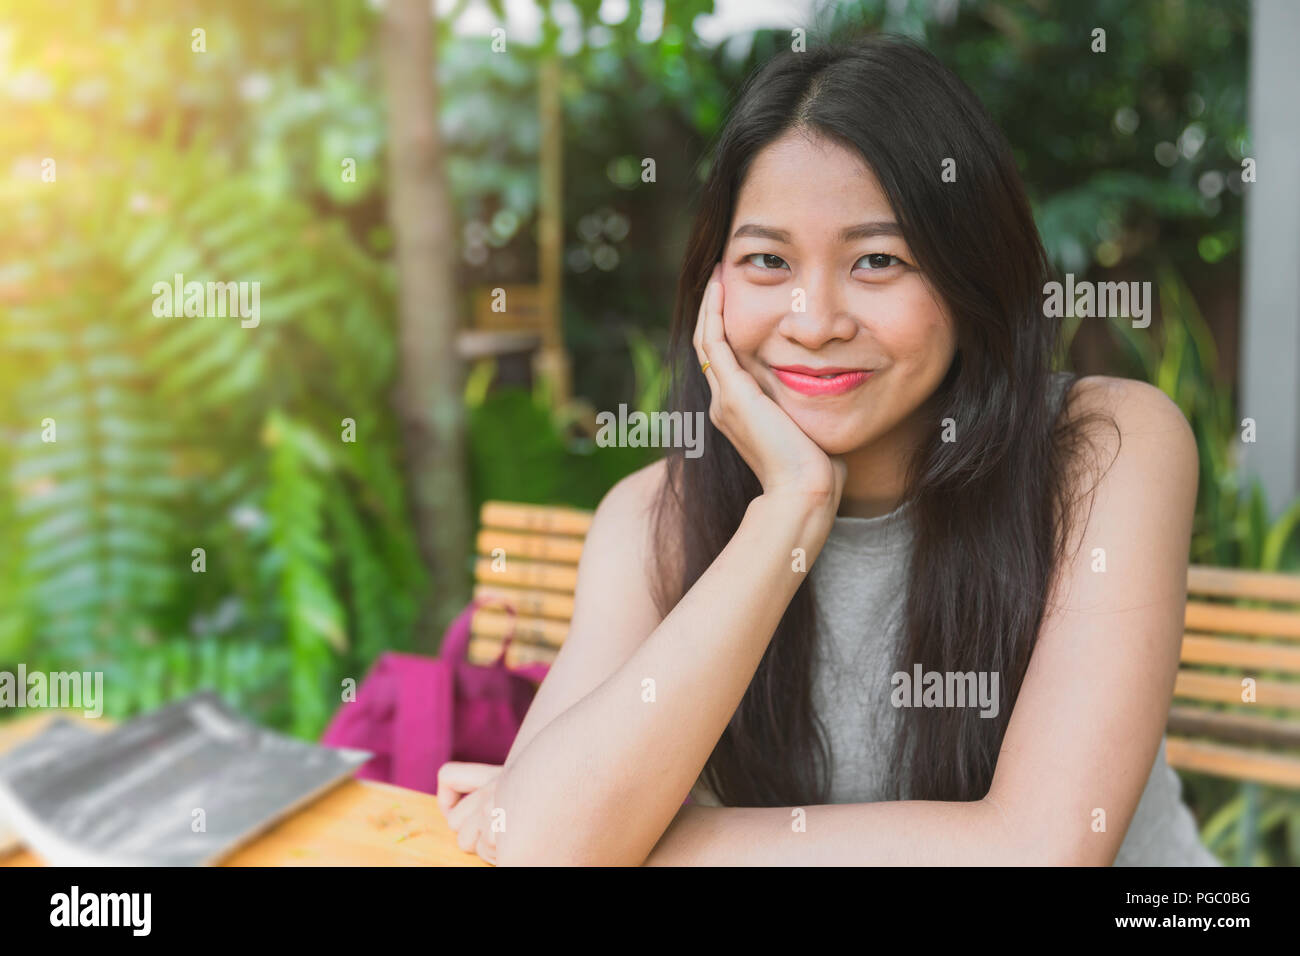 Belle asiatique sourire Thai teen mignon cheveux noirs dans le jardin, vous détendre la posture Banque D'Images